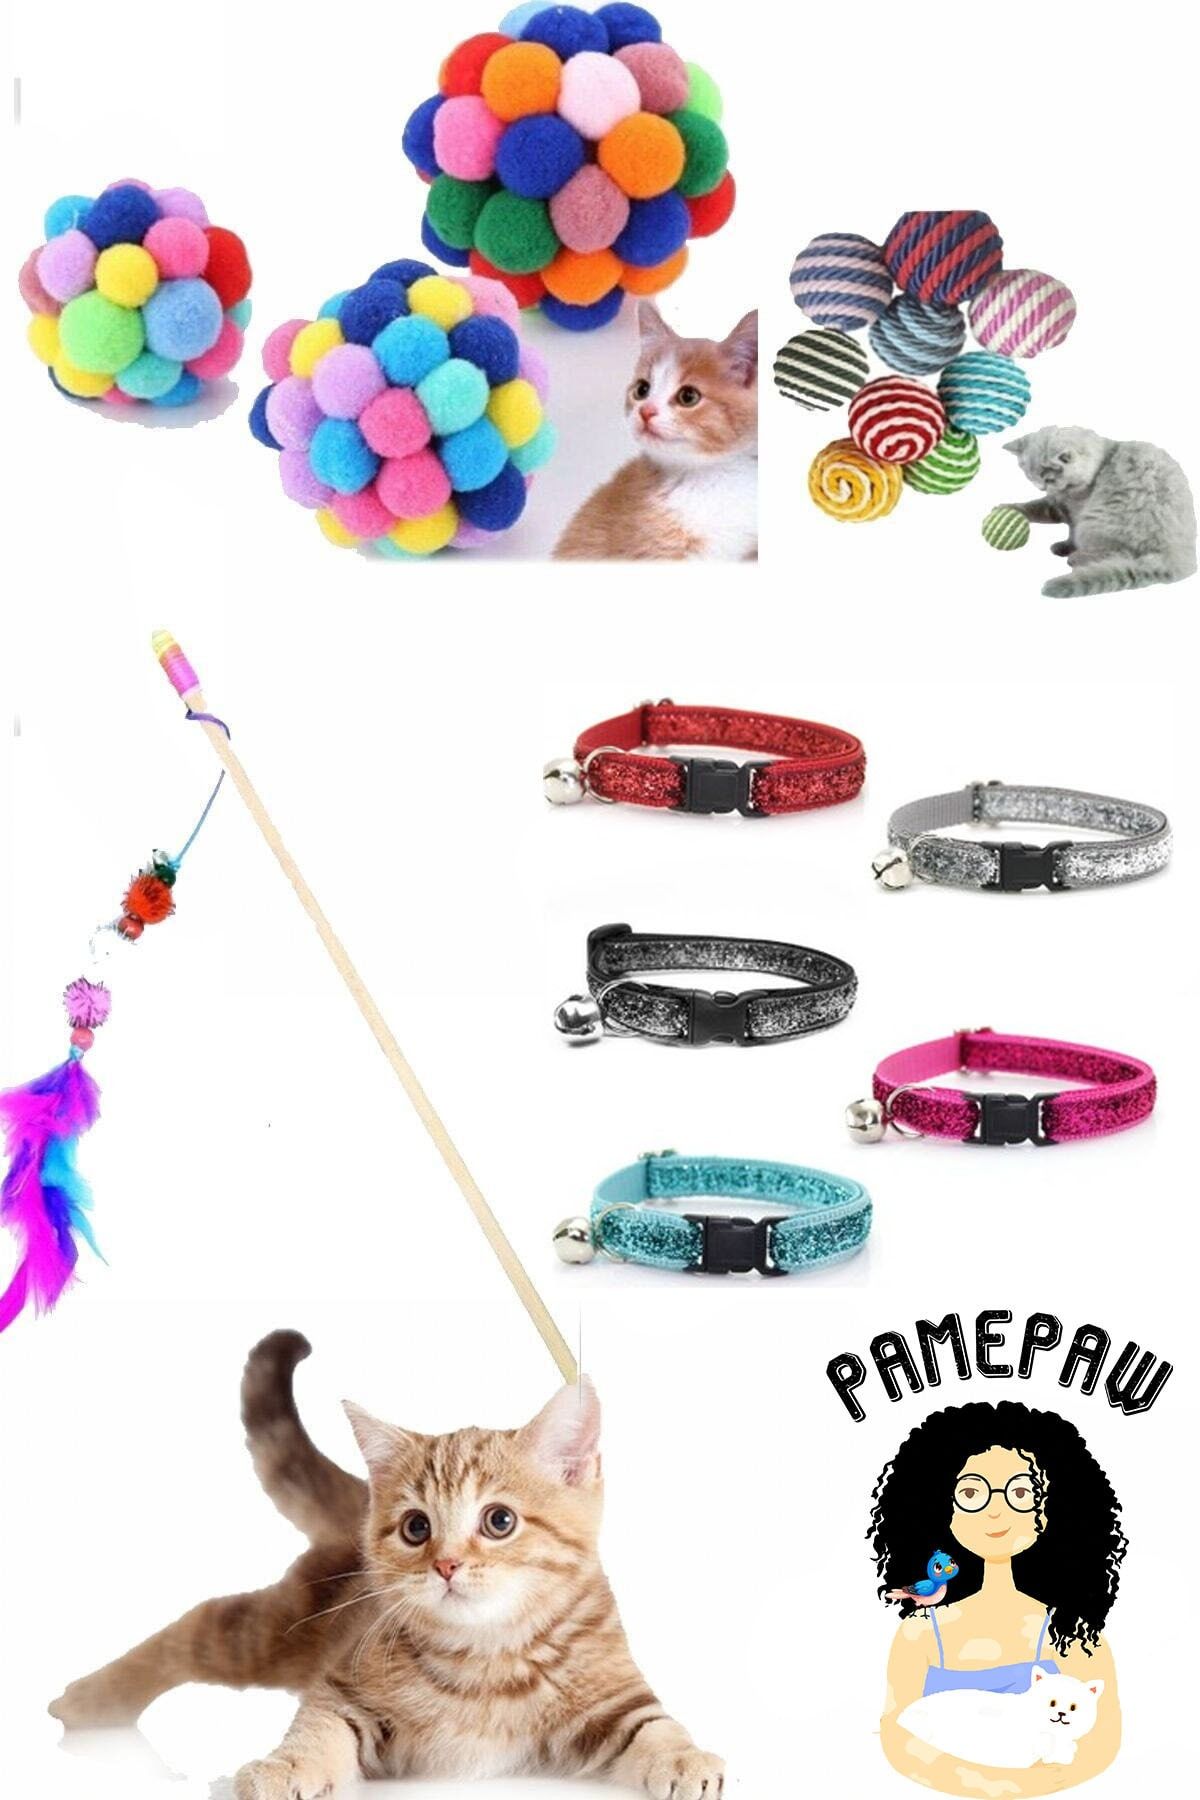 RETROAVM Pet Kedi Oyun Oltası 90 Cm Ve Ip Sarma Topu Ve Kedi Renkli Tasma Ve Xxl Ponponlu Kedi Oyuncağı